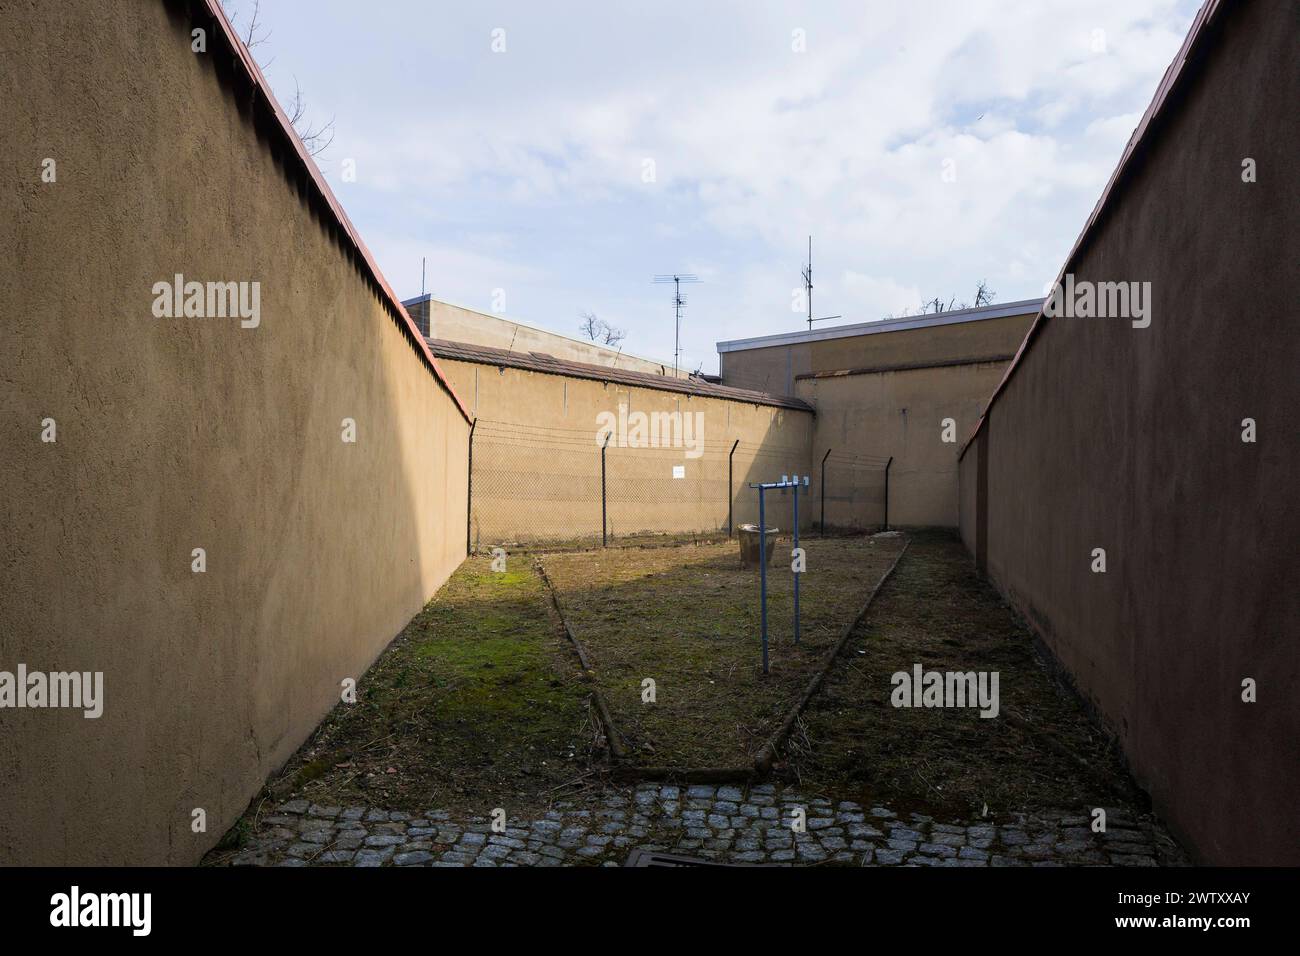 Bautzen Stasi Knast Gedenkstätte Im sächsischen Bautzen gab es historisch zwei Gefängnisse, die heute insbesondere für Unrecht und politische Verfolgung in der Sowjetischen Besatzungszone und in der DDR bekannt sind. Zwischen 1902 und 1906 wurde an der Lessingstraße in der Bautzener Ostvorstadt ein großzügiges neues Gerichtsgebäude errichtet, dem ein Vollzugskomplex angeschlossen war. Dieser umfasste 134 Einzel-, 23 Dreimann-, 2 Durchgangs-, 4 Kranken- und 5 Arrestzellen. Von 1945 bis 1949 diente es der sowjetischen Militärverwaltung als Untersuchungsgefängnis, von wo aus die Verurteilten dire Stock Photo